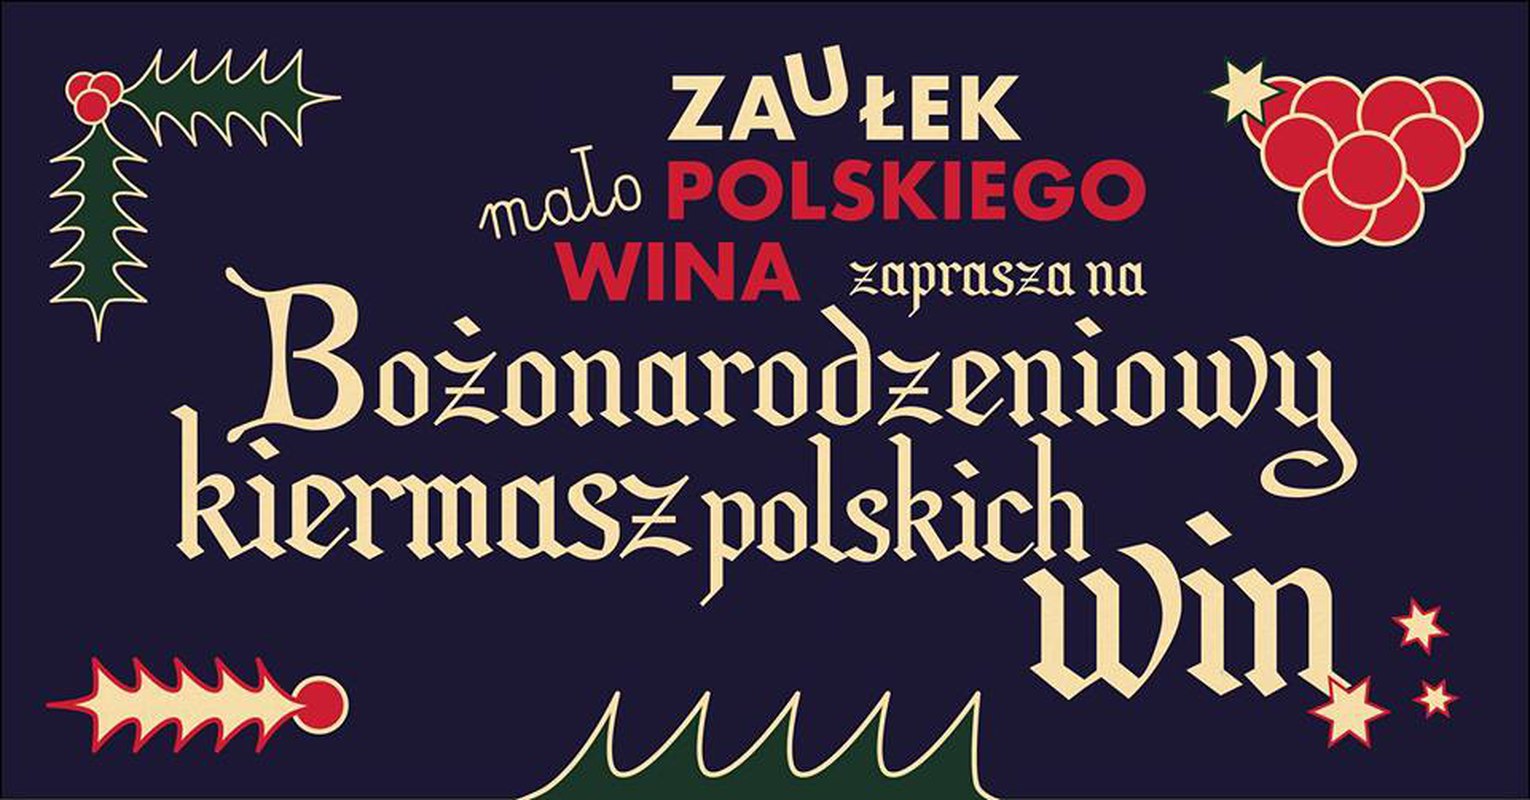 Kup polskie wino na Święta i prezent! 4 małopolskie winnice